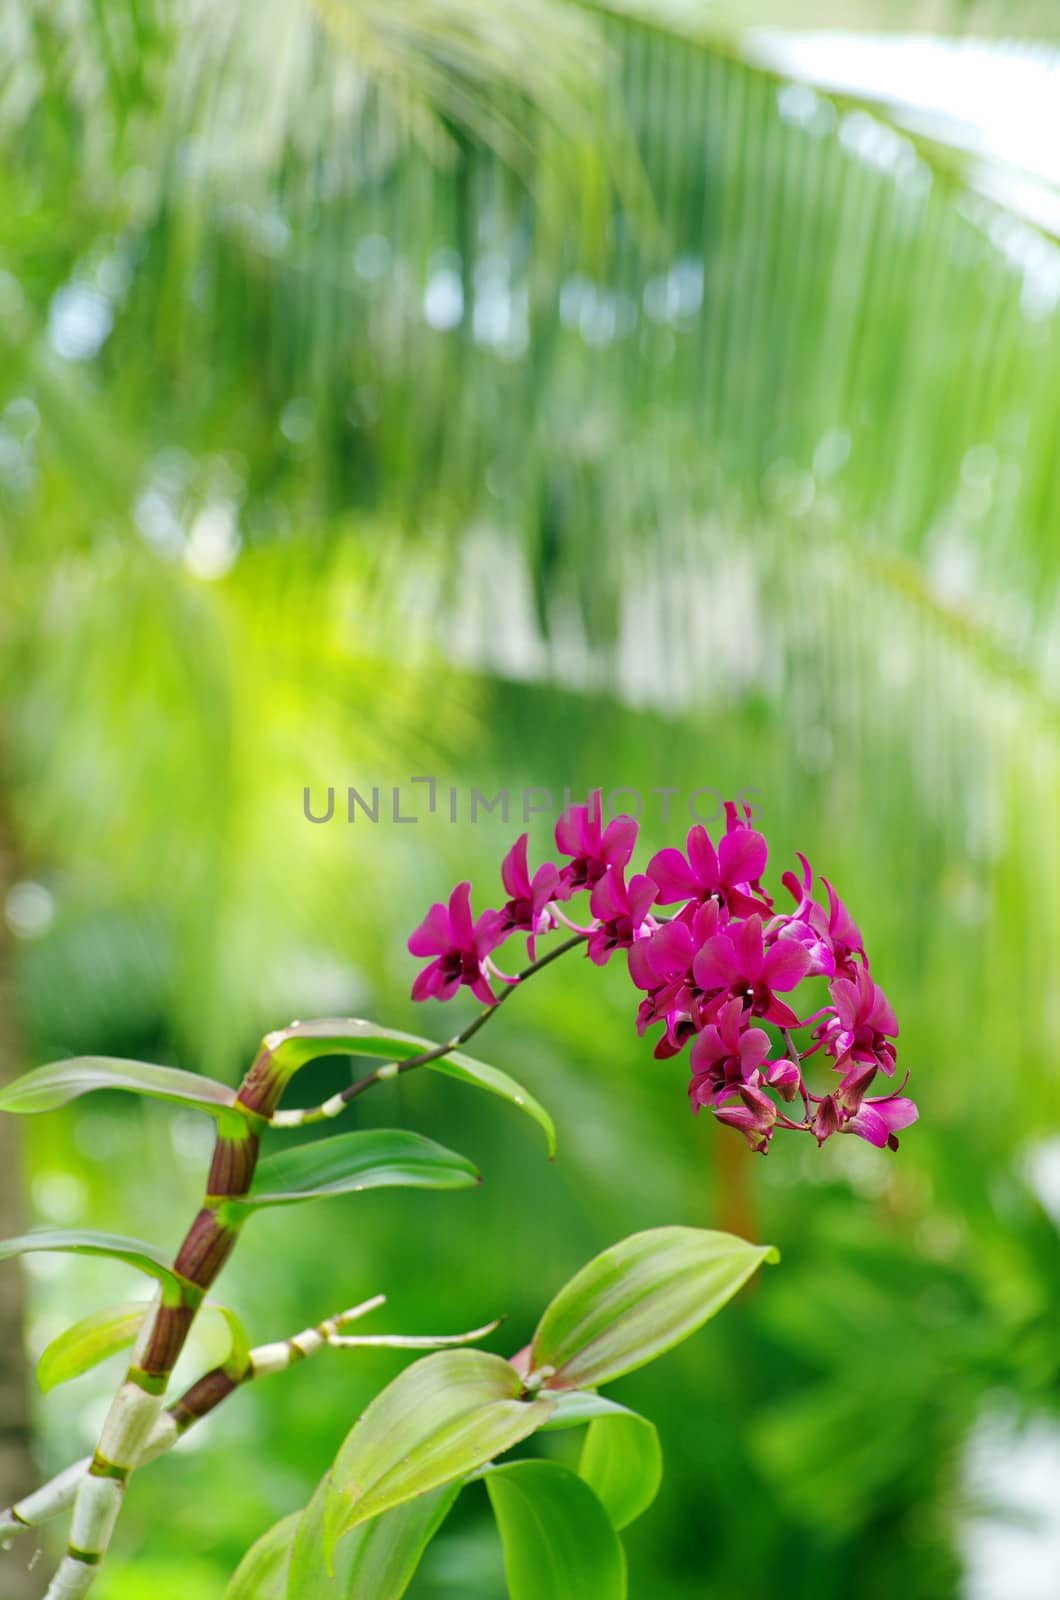  orchid  by Pakhnyushchyy